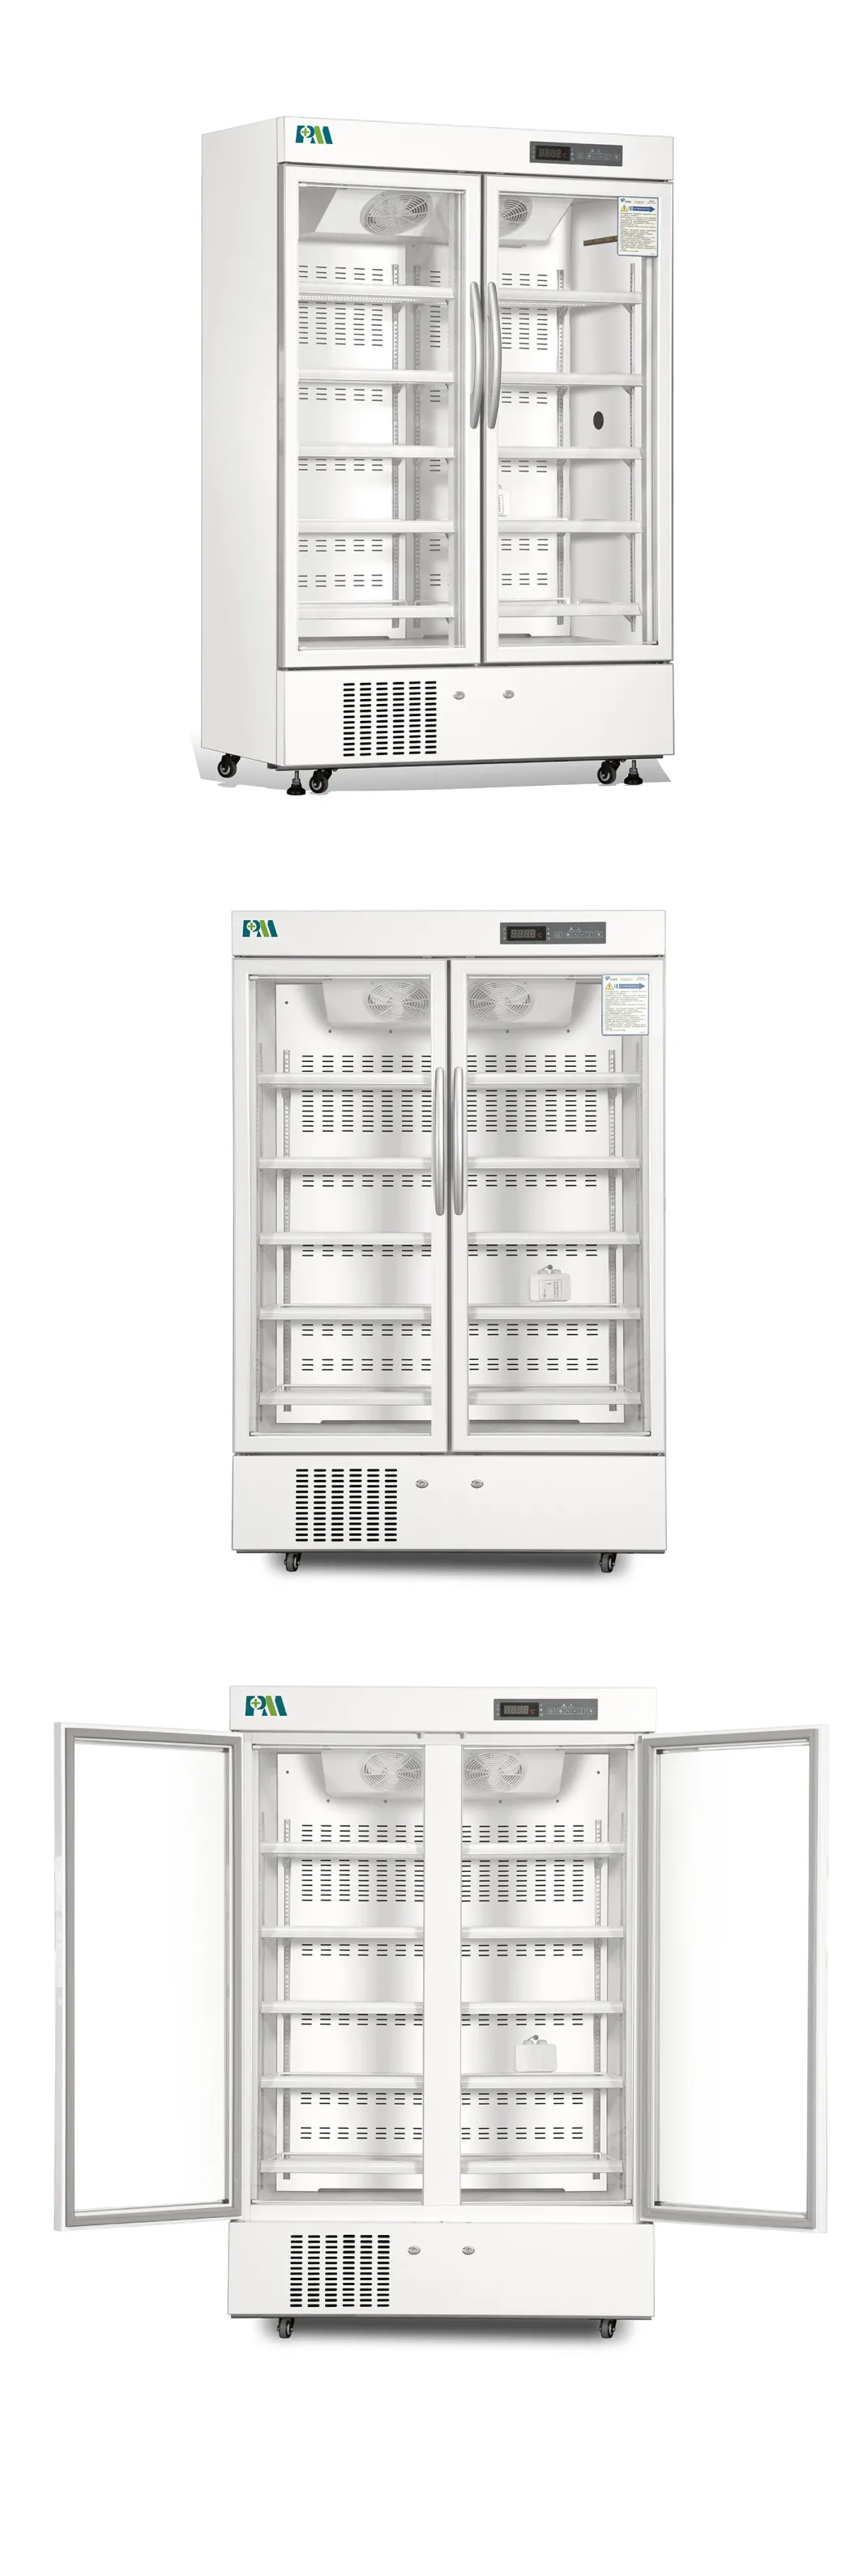 Μεγάλης περιεκτικότητας 656L δίπλα-δίπλα πορτών κάθετο ψυγείο εμβολίων φαρμακείων στάσεων ιατρικό 2-8 βαθμοί